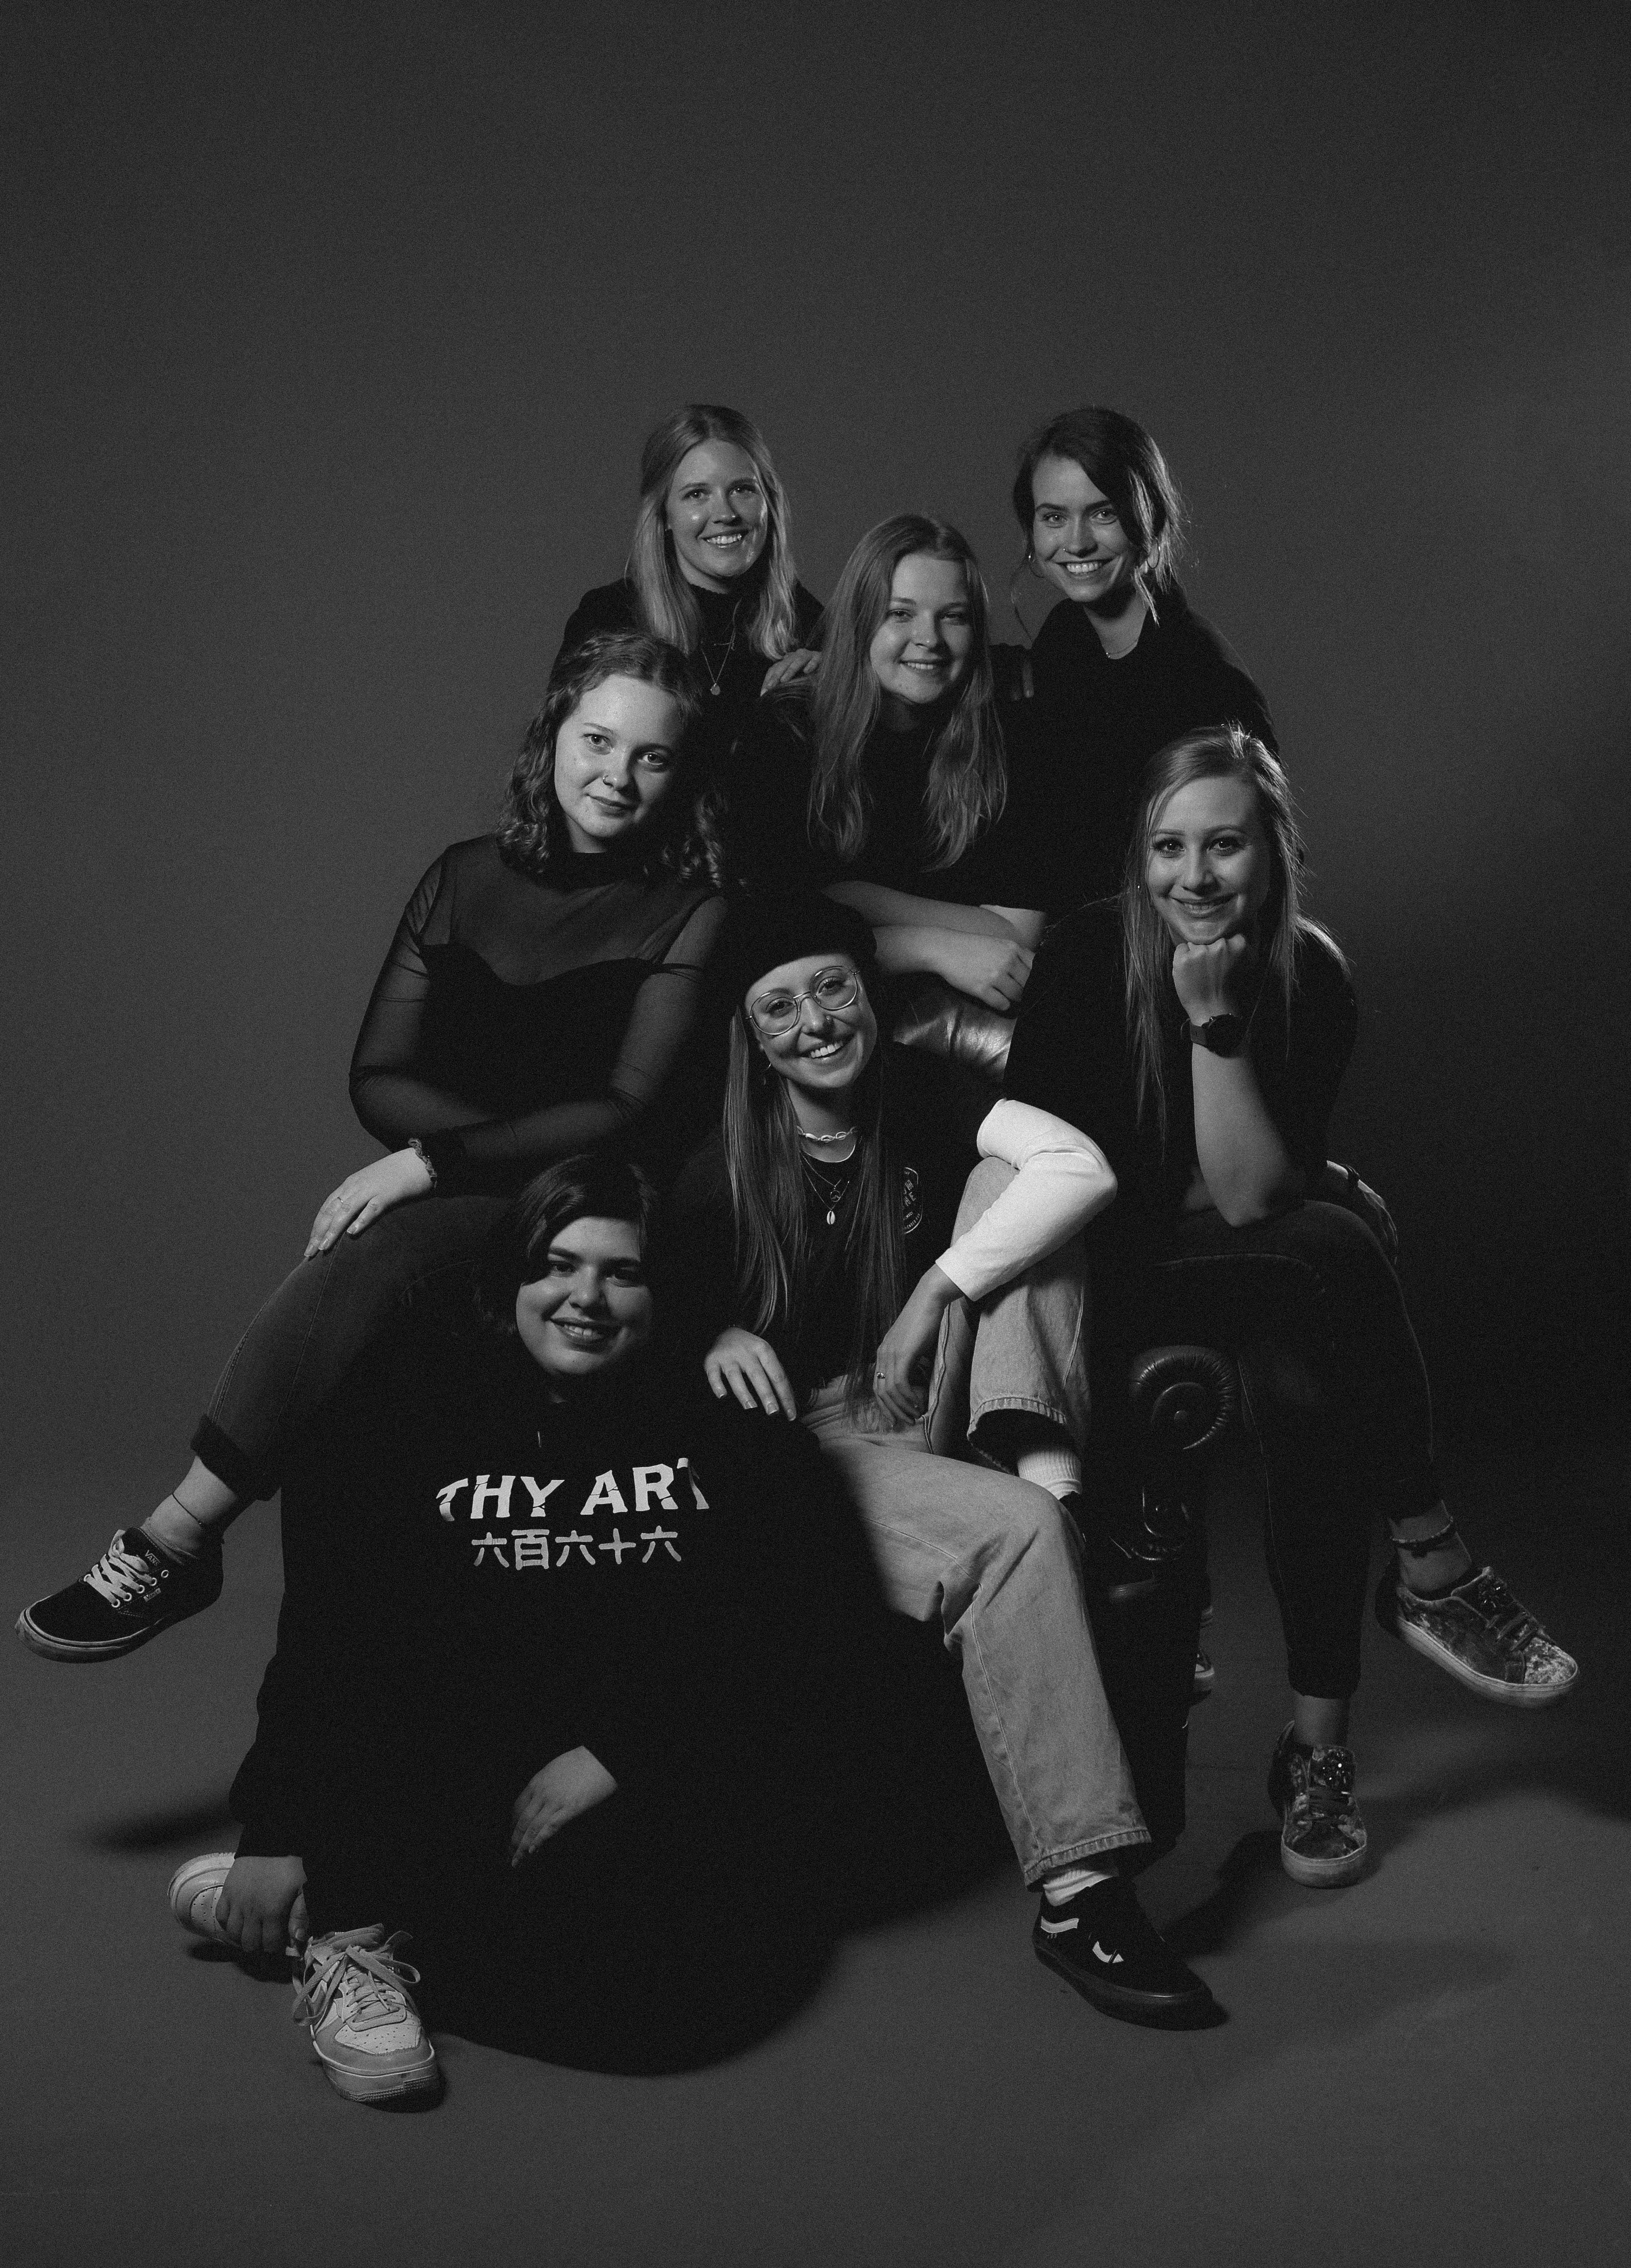 Gruppenfoto von 7 Frauen, Mitarbeiterinnen von roundacorner